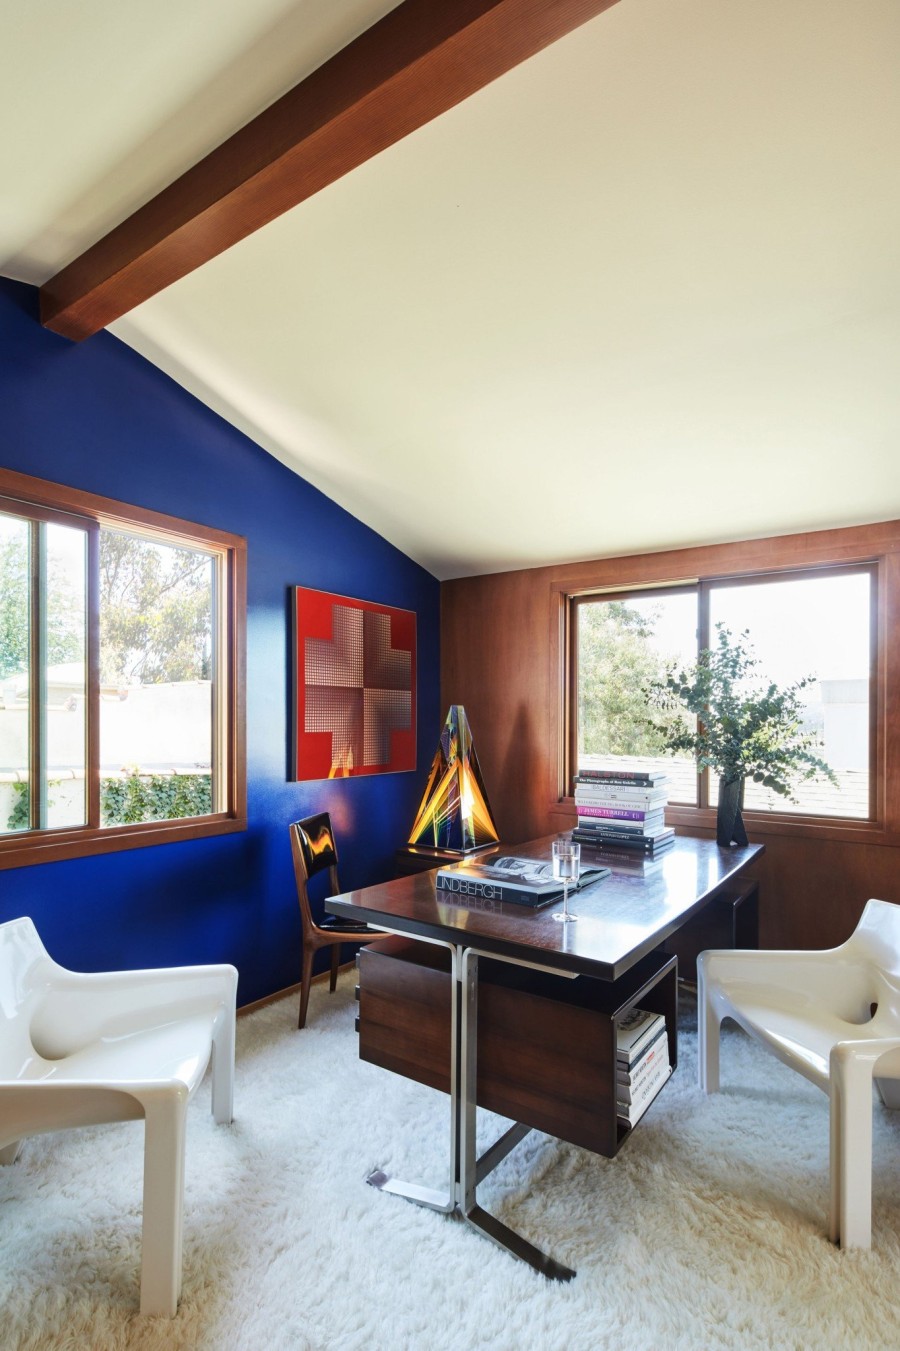 Μια εντυπωσιακή κατοικία στο Los Angeles «απογειώνει» το ξύλο και τα γήινα χρώματα- Φωτογραφία 3